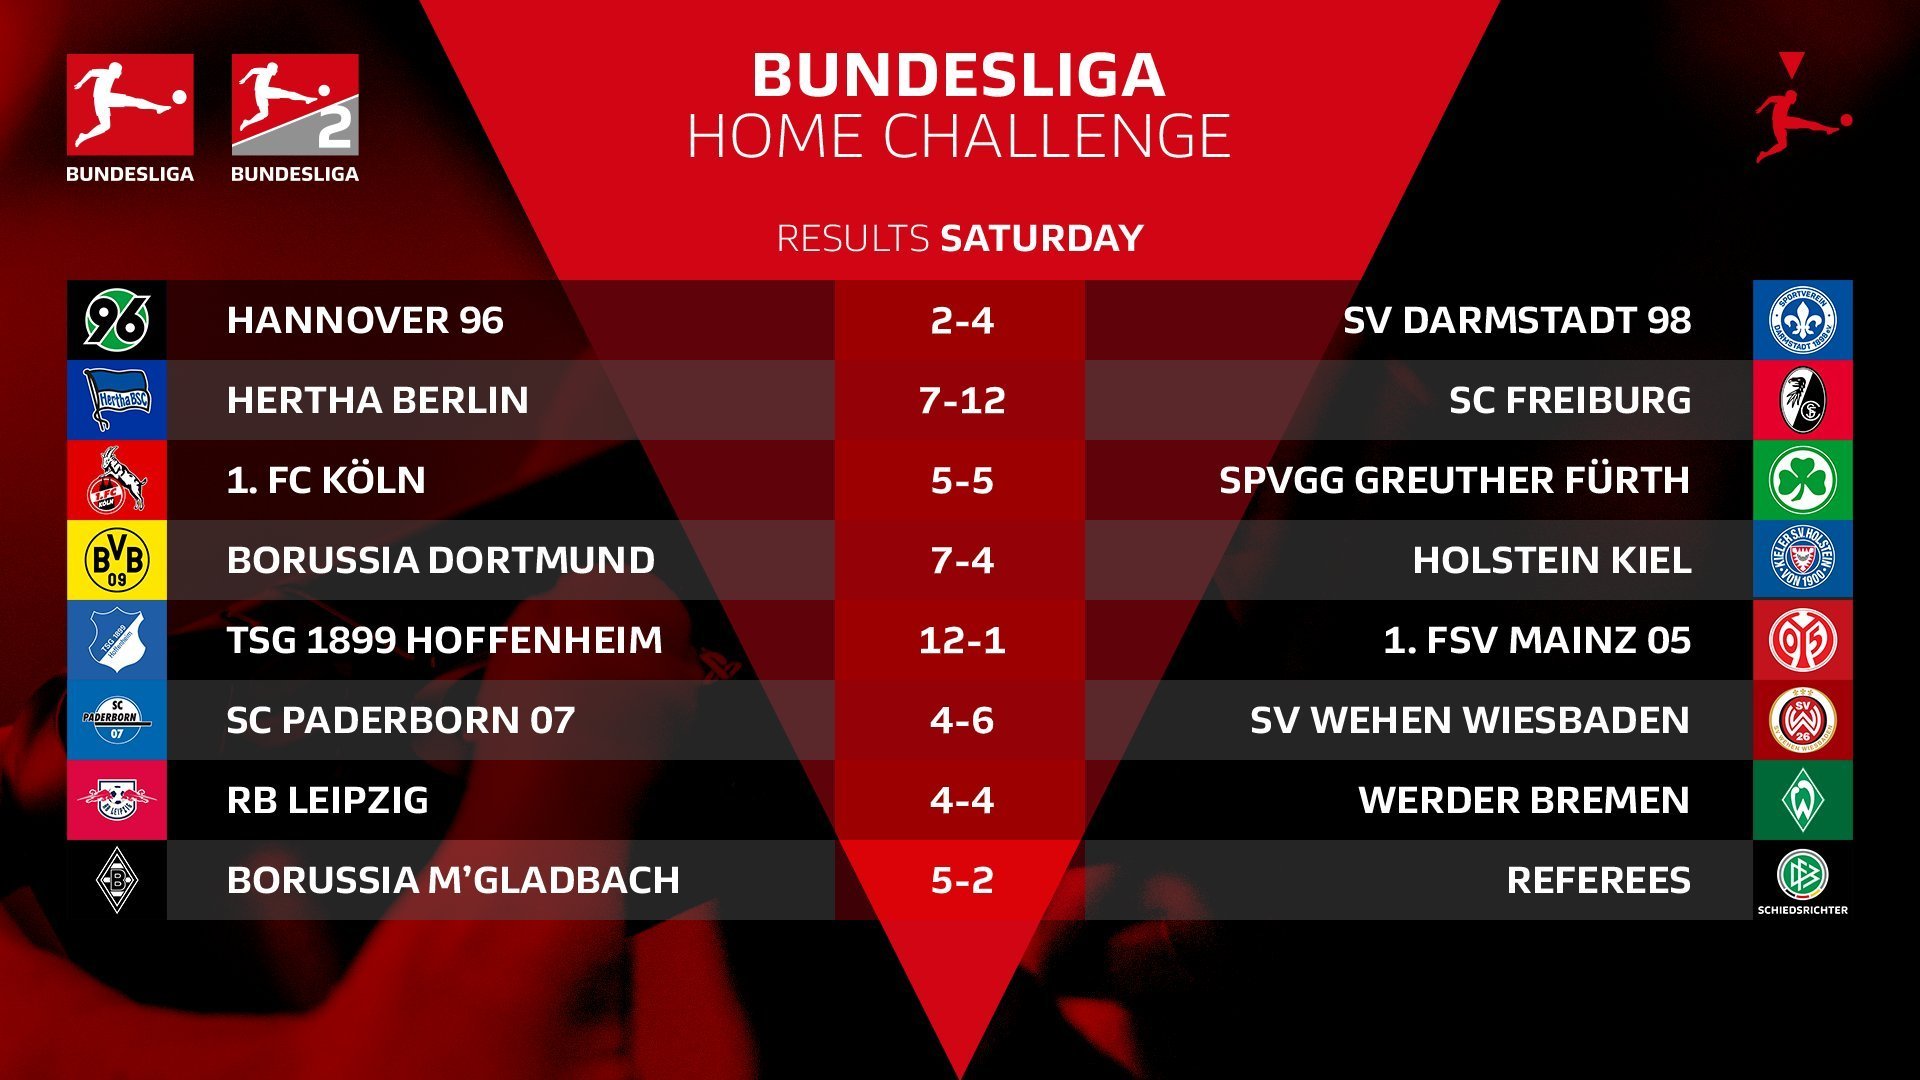 Киберфутбол. FIFA 20. Бундеслига. #BundesligaHomeChallenge. Вторая игровая неделя: результаты матчей субботы - изображение 1